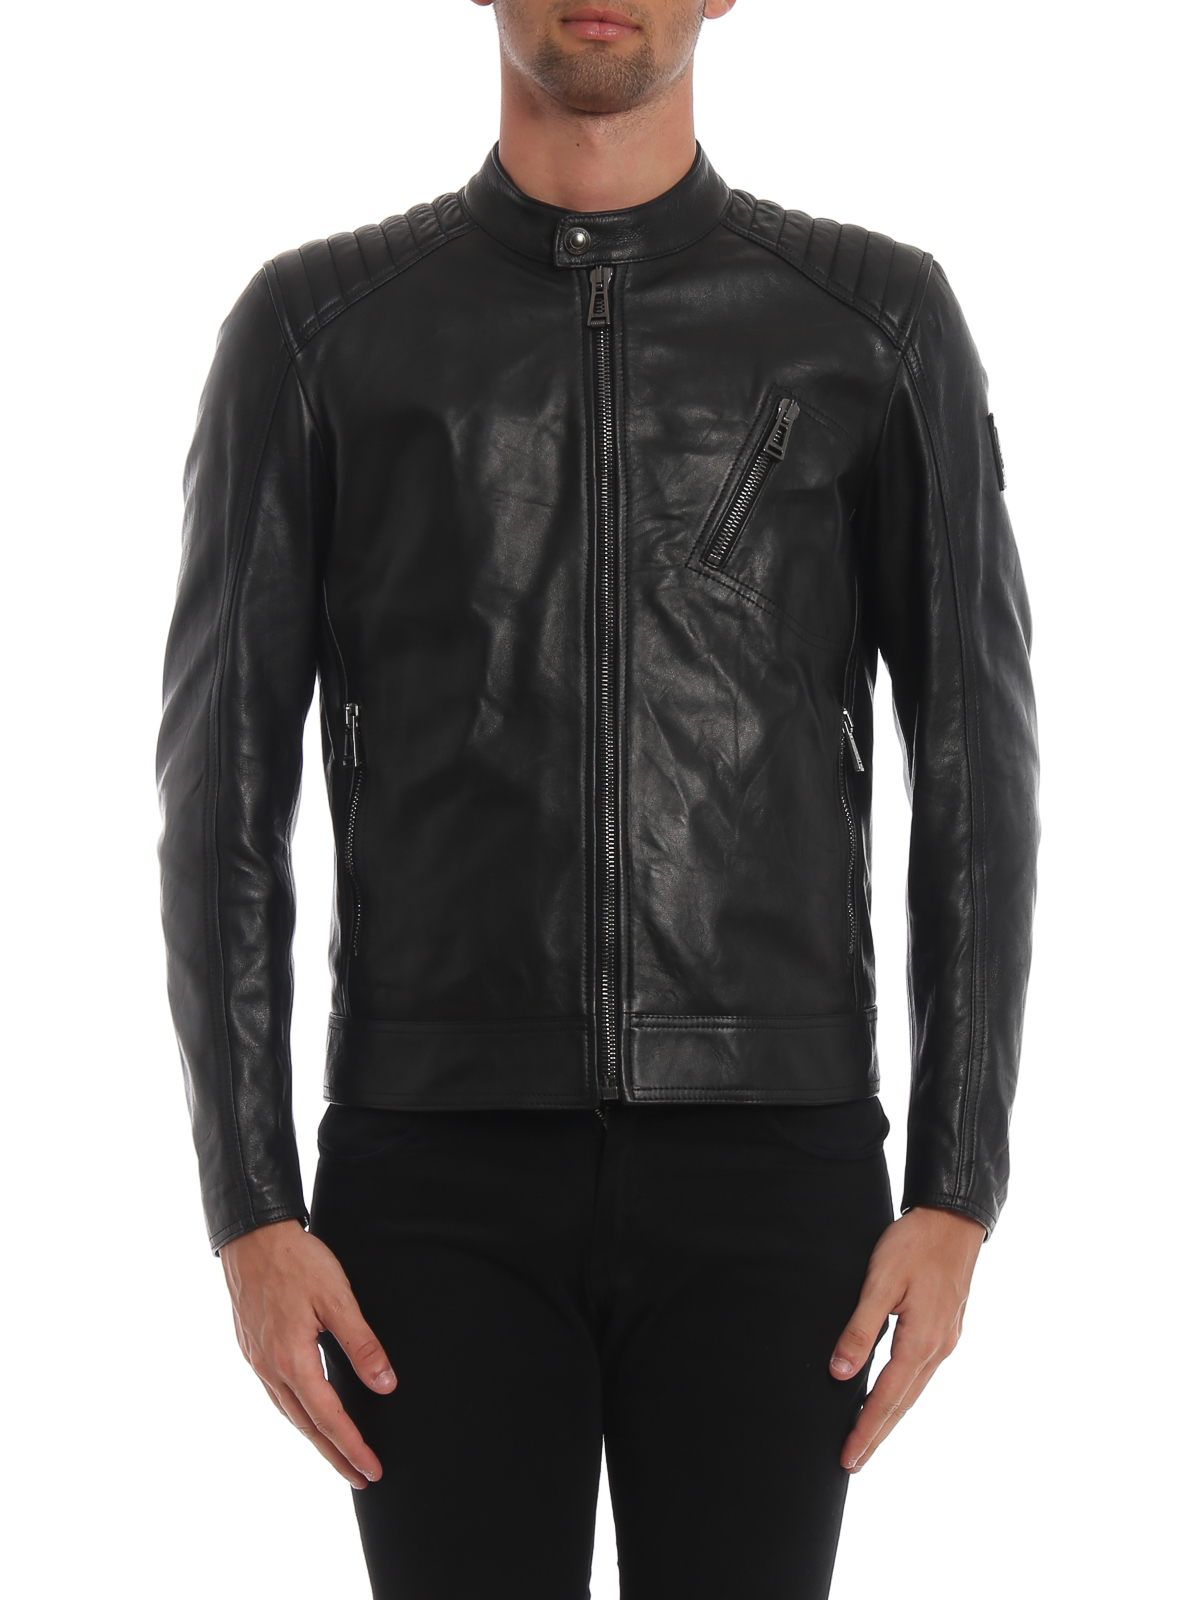 Behoort stereo heilig Leather jacket Belstaff - Wrinkled effect leather biker jacket -  71020730L81N055390000